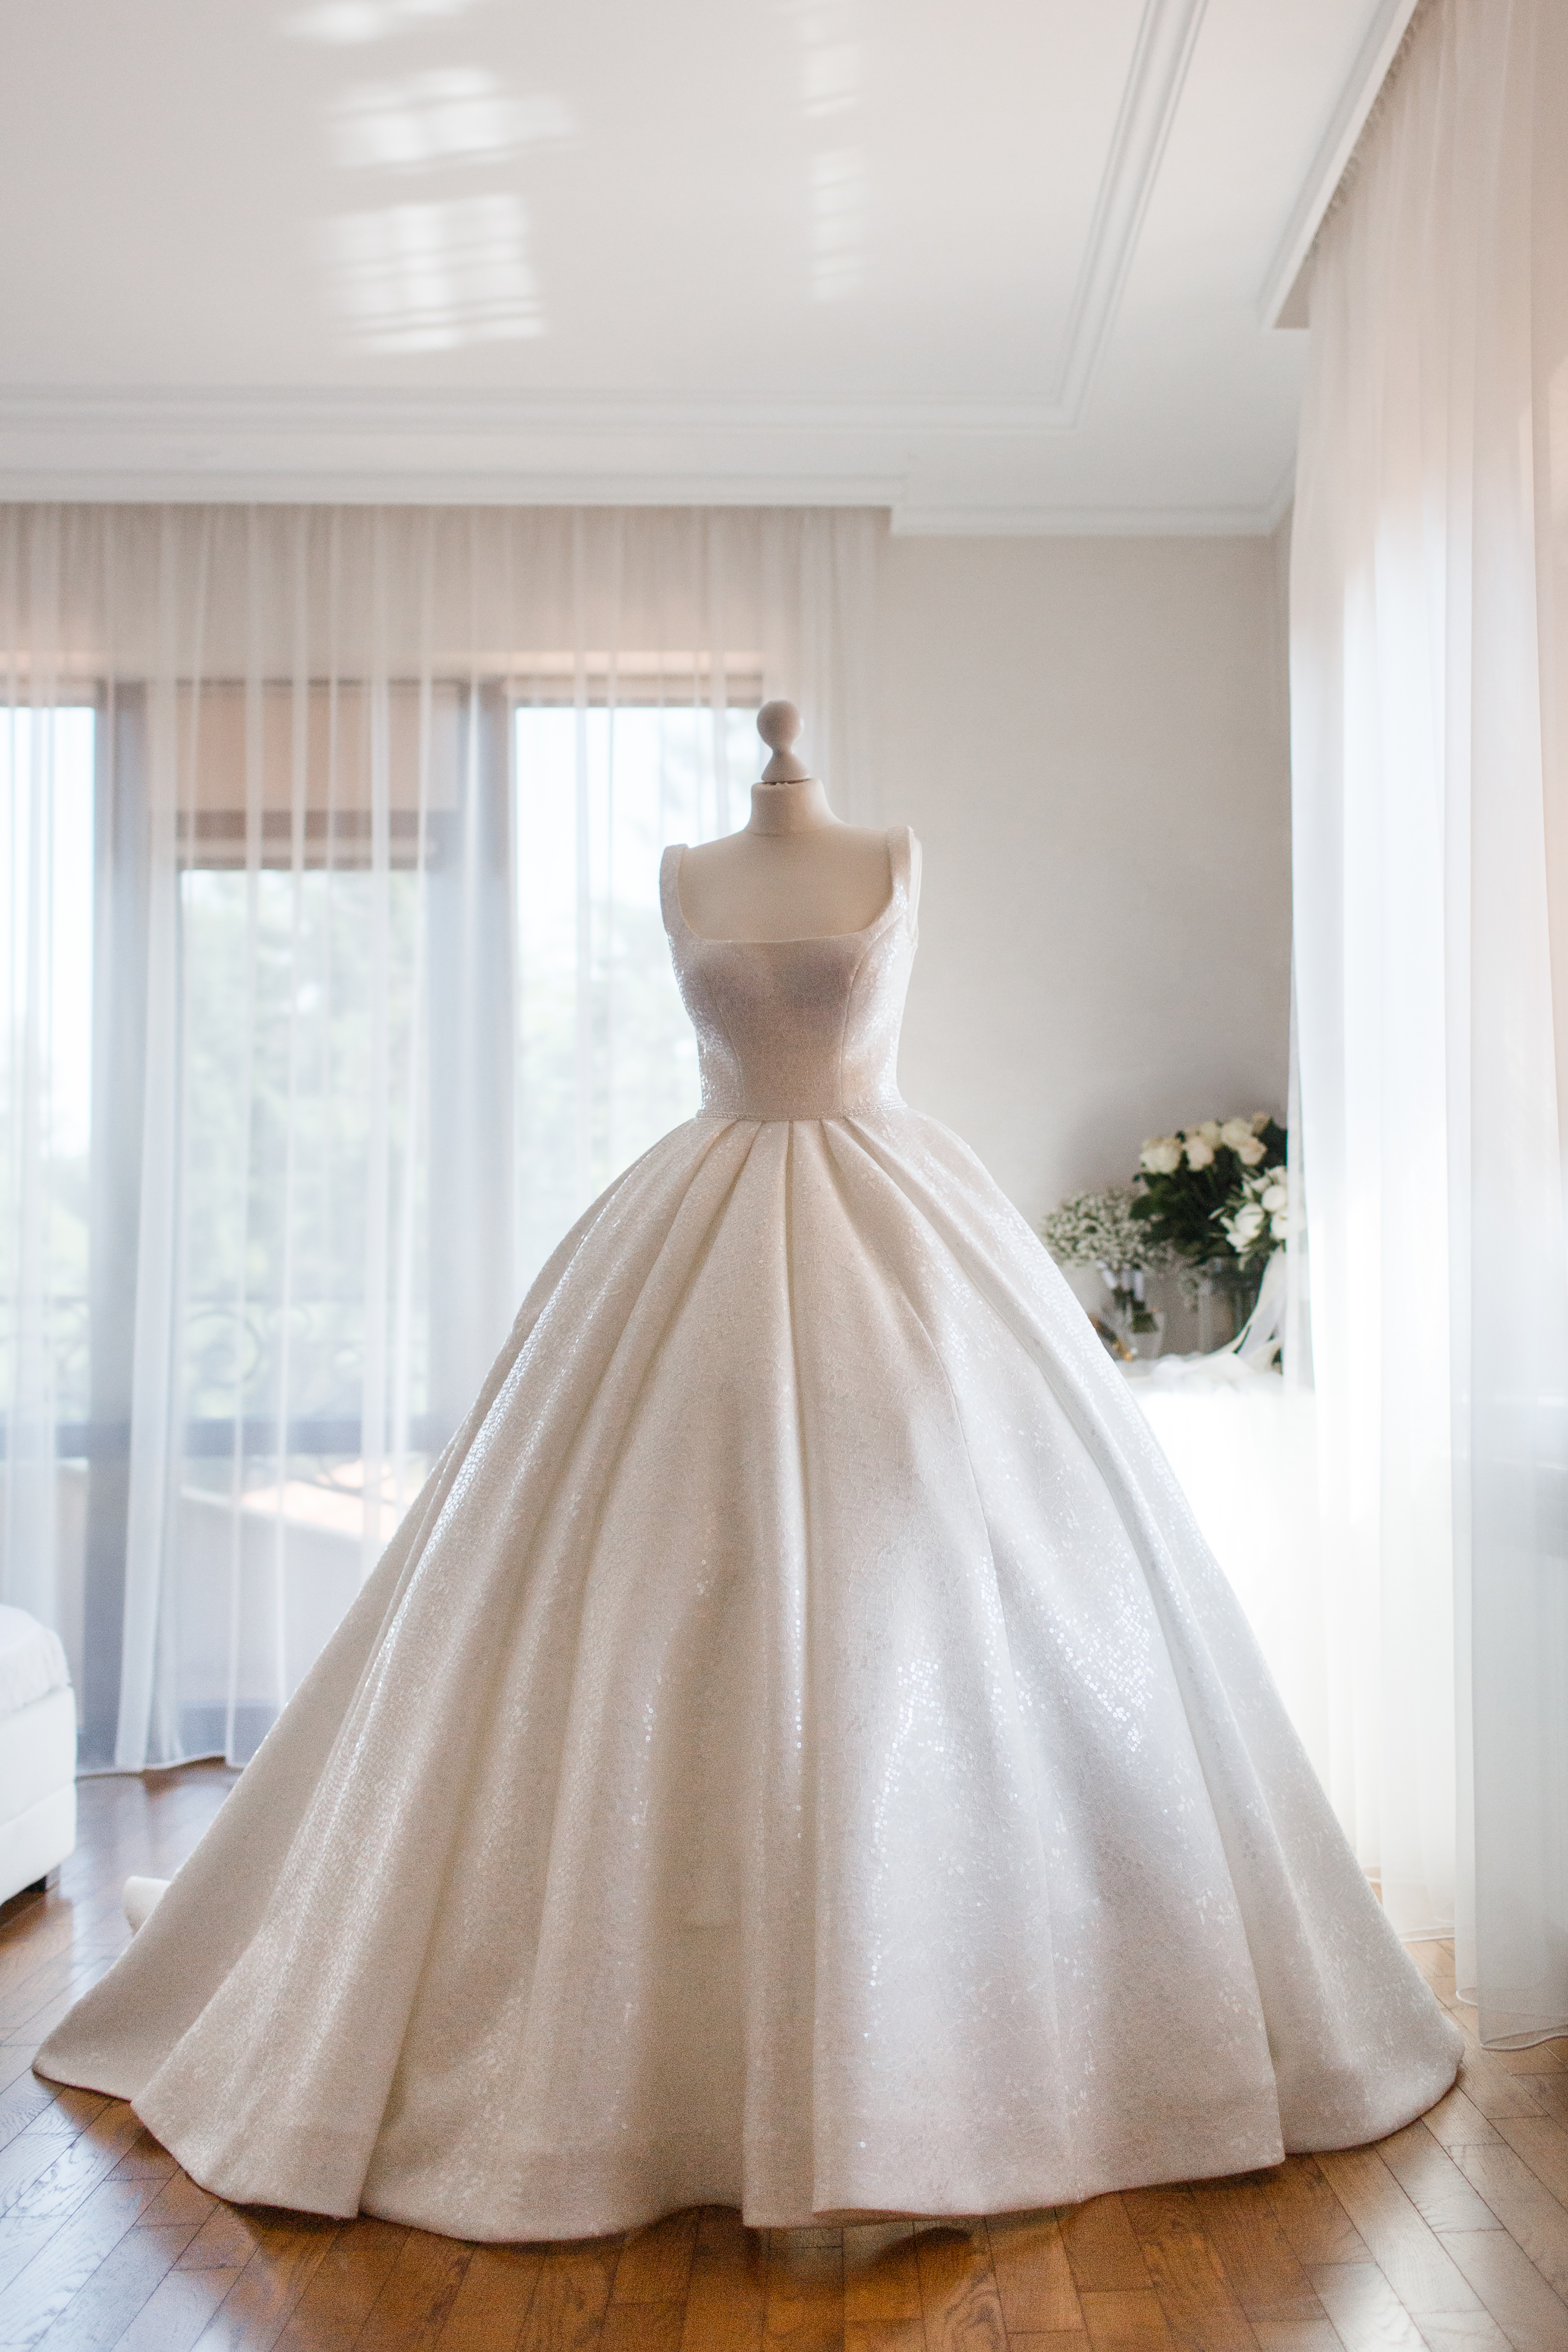 Ein Hochzeitskleid auf einer Schaufensterpuppe in einem Geschäft | Quelle: Getty Images